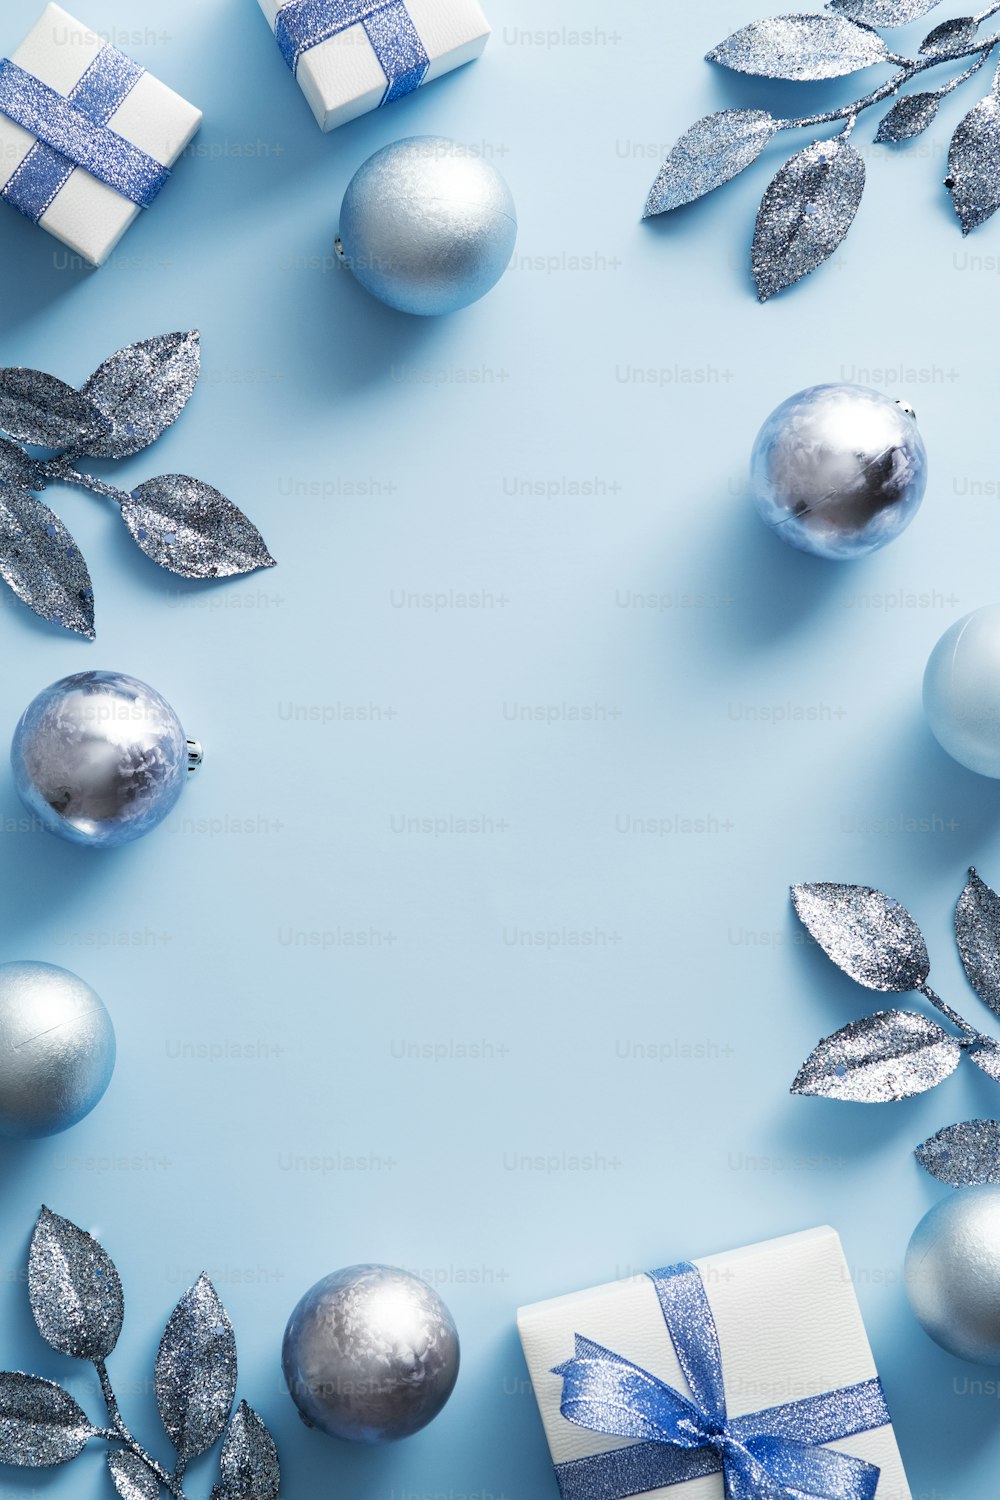 青い背景にモダンな装飾、ボール、ギフトボックスのクリスマスフレーム。クリスマスポスターデザイン、新年会招待状のモックアップ。